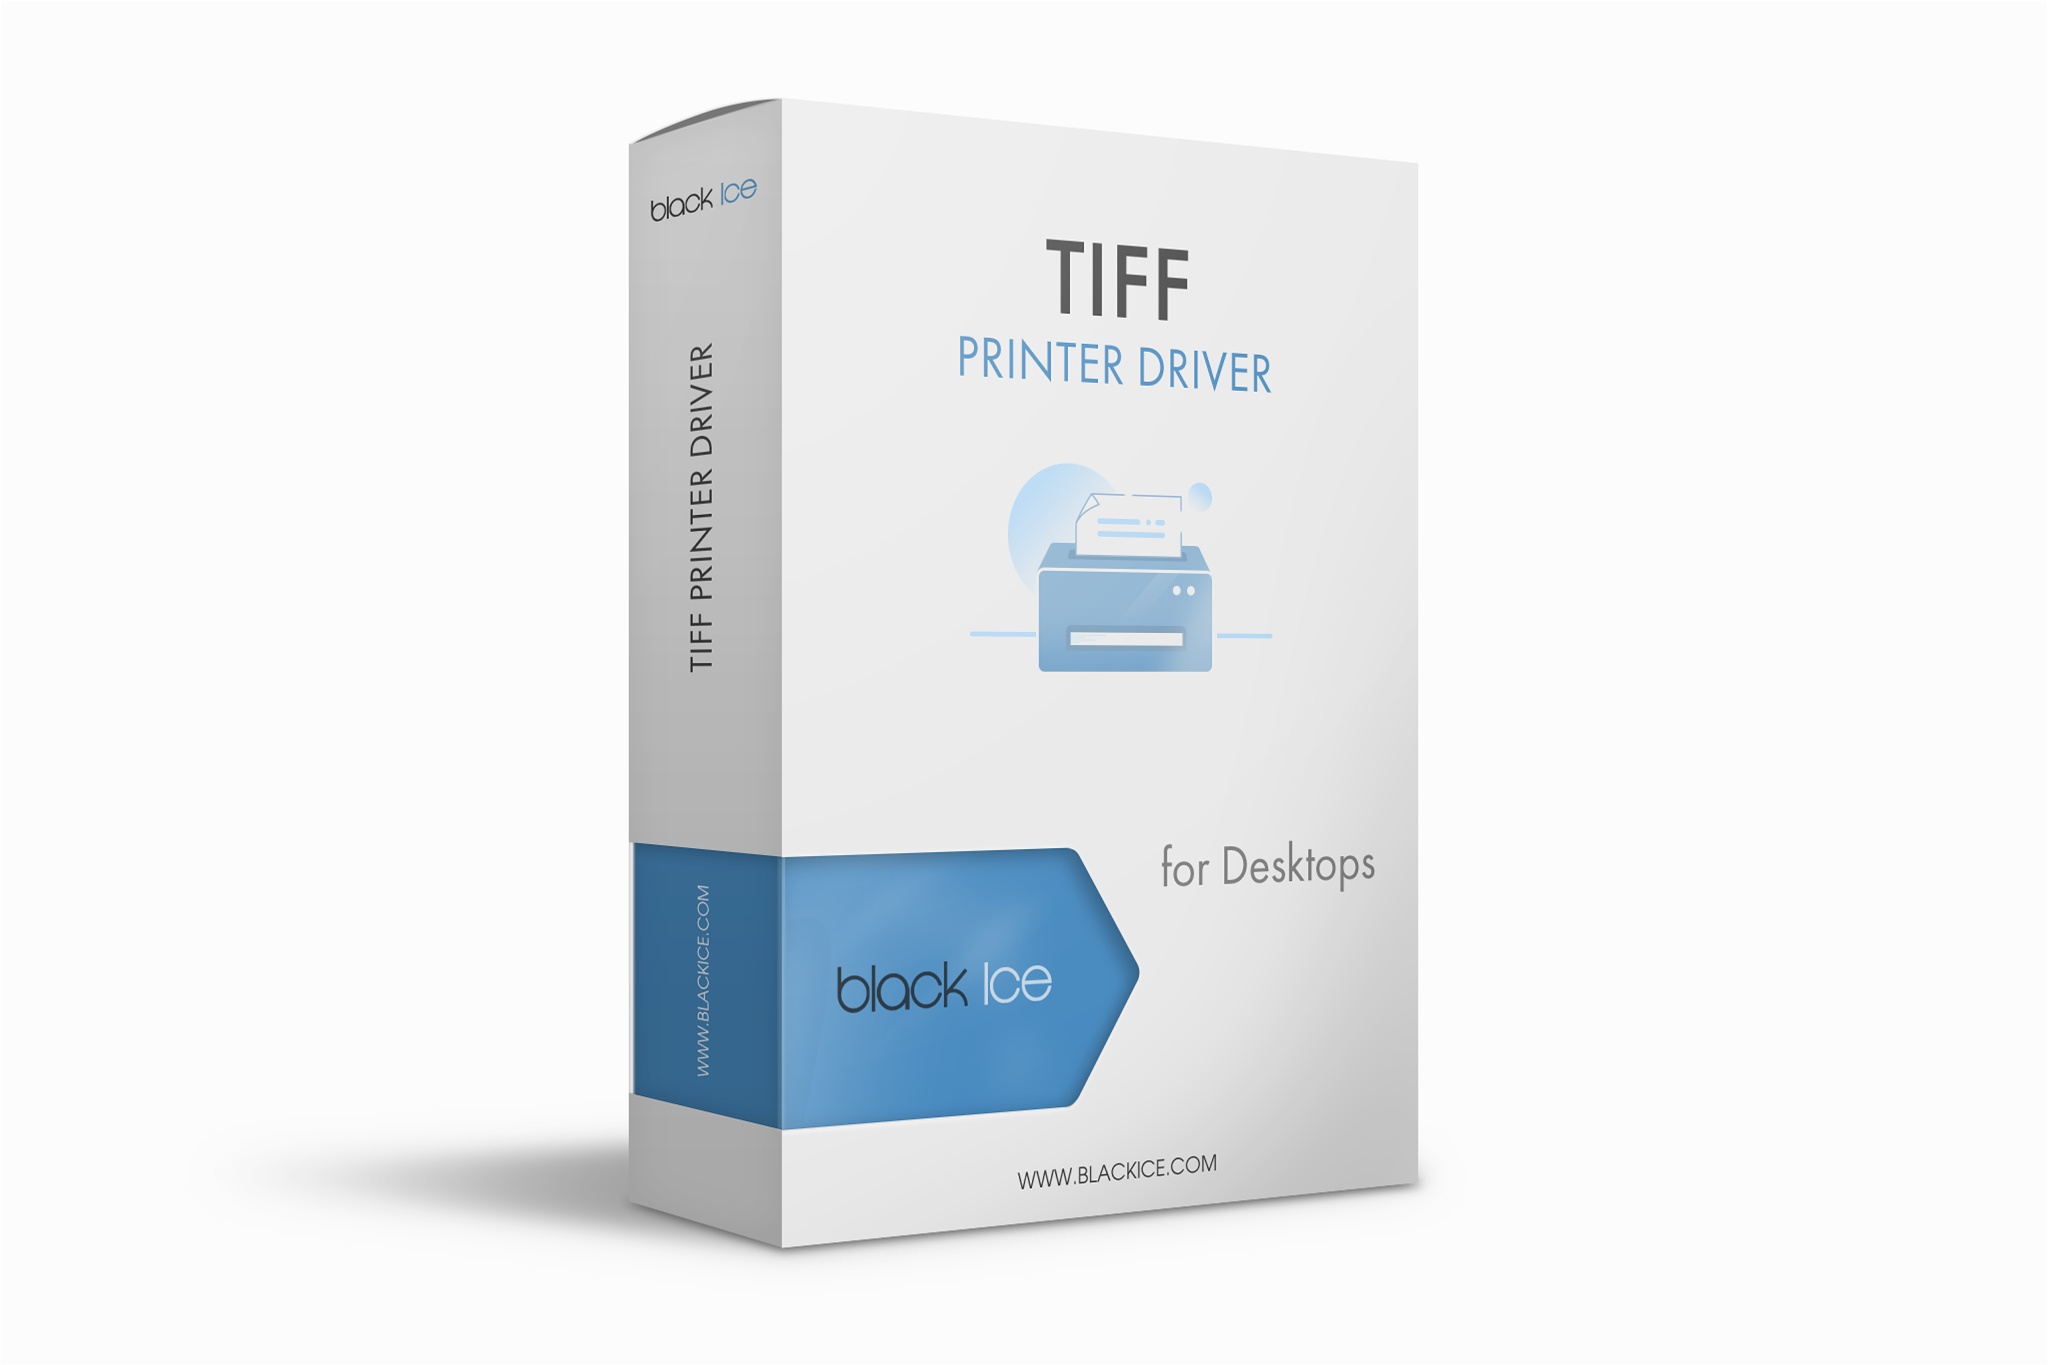 TIFF/Monochrome Printer Driver Subscription (Single License and 3 multi-printers or ports)